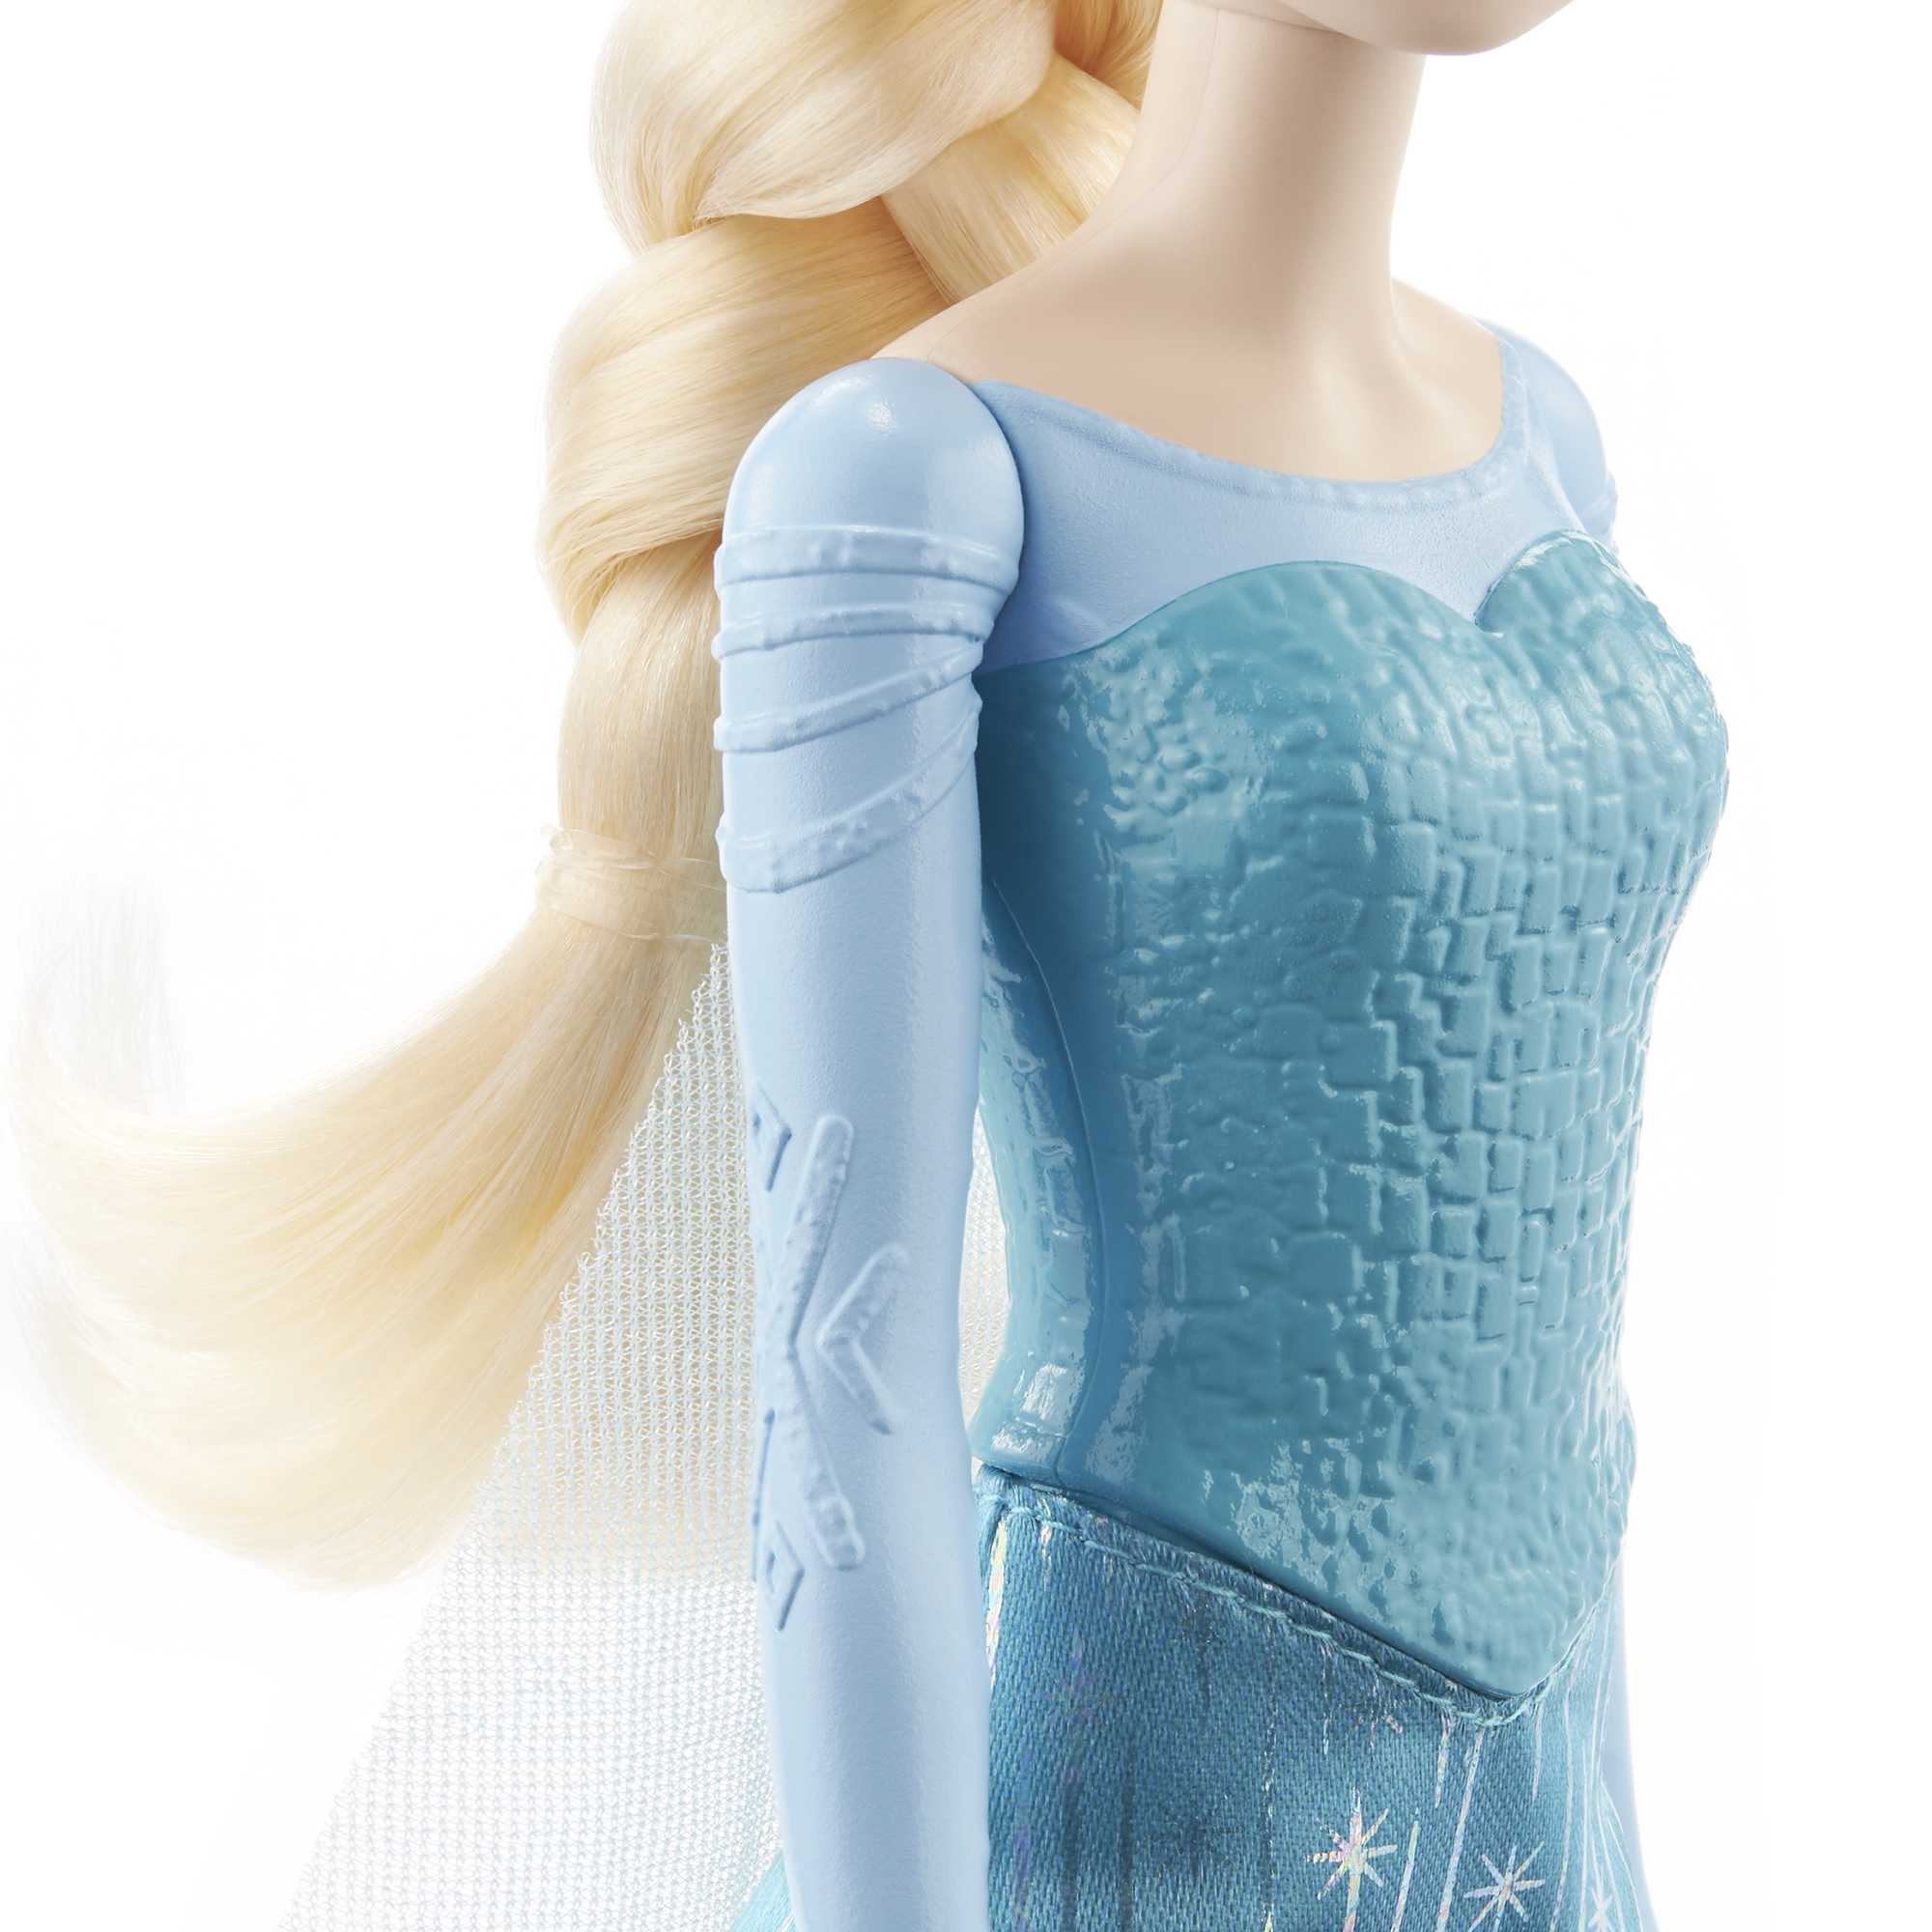 MATTEL Elsa chanteuse Reine des neiges pas cher 